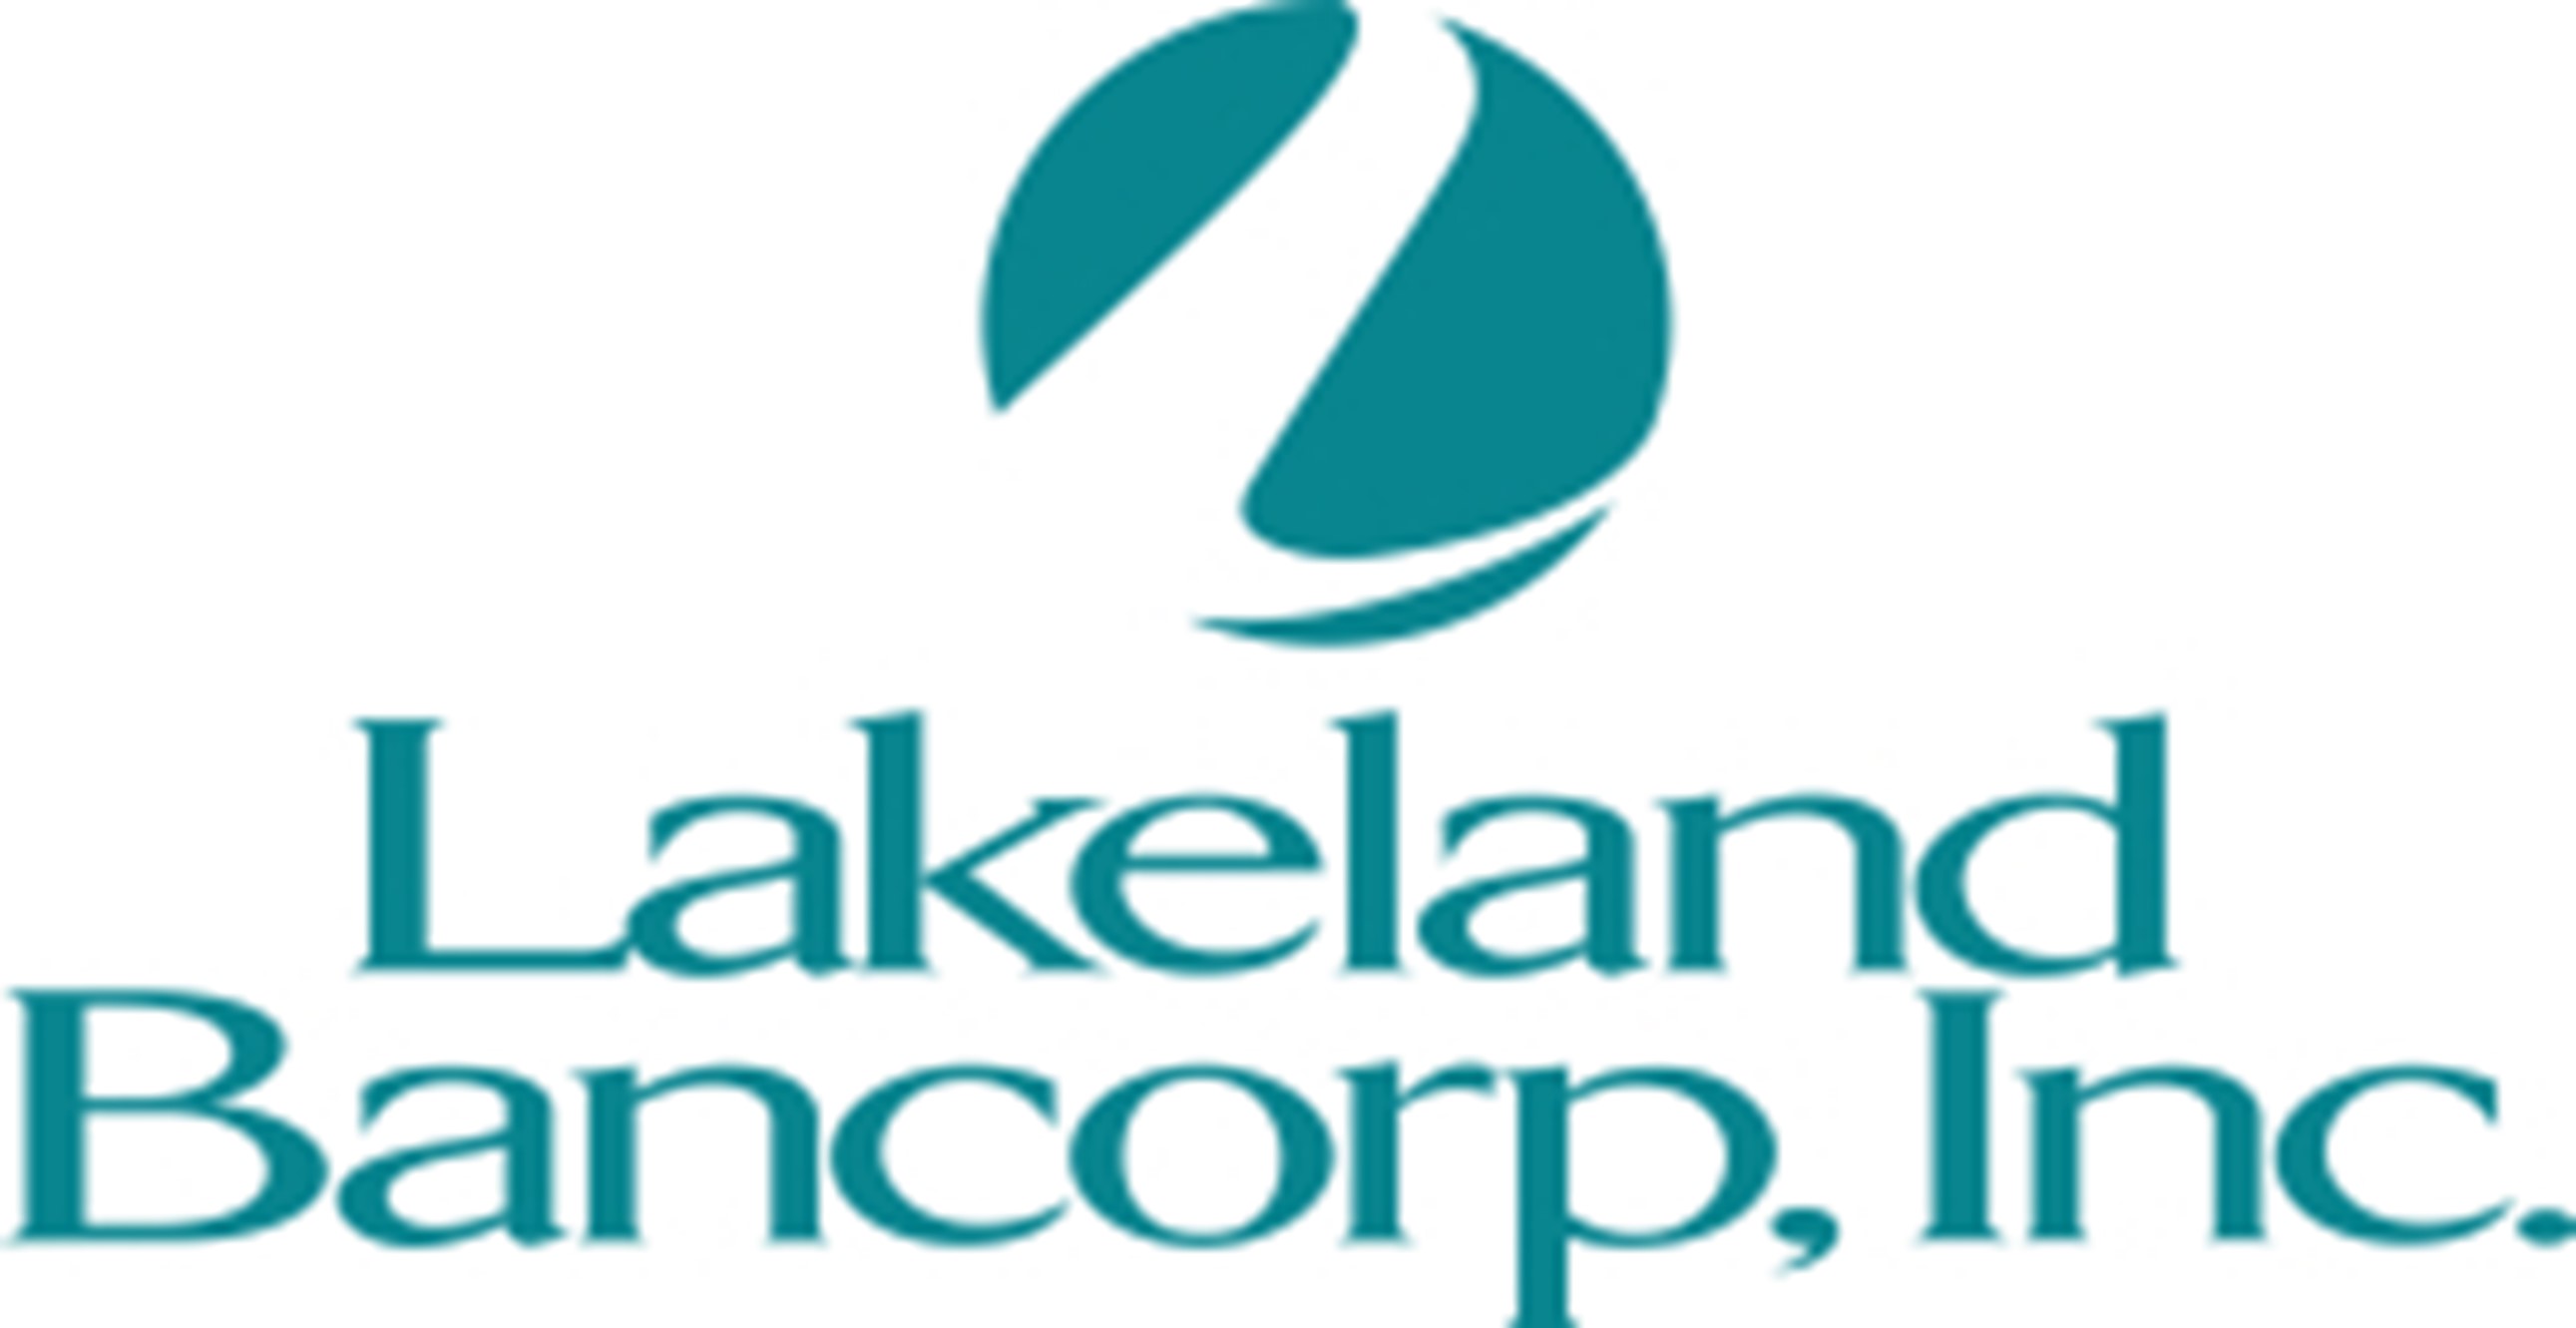 Lakeland Bancorp logo.jpg